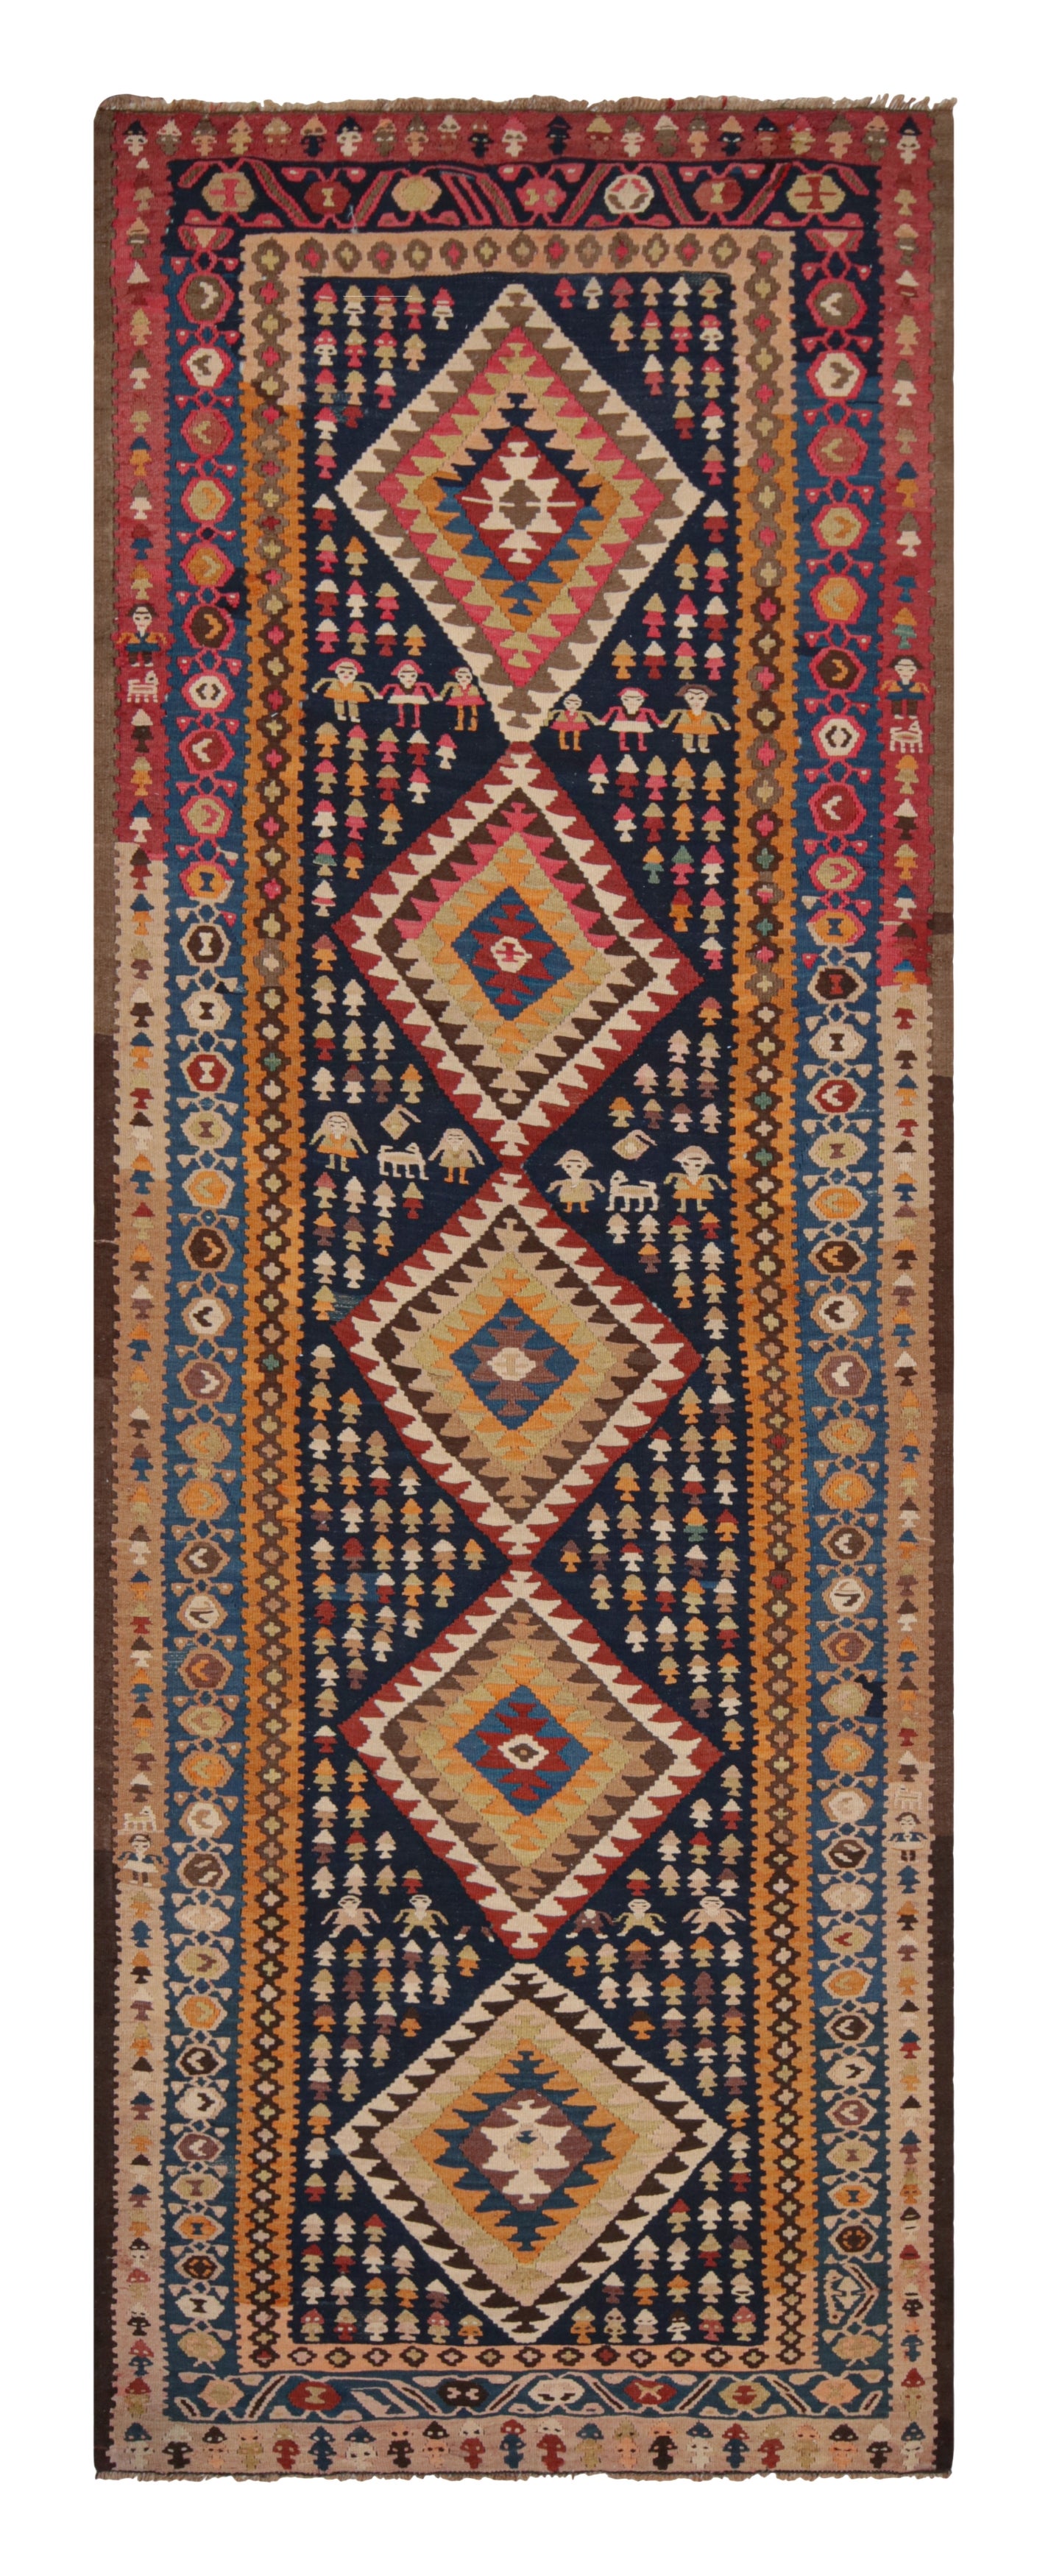 Vintage Bidjar Geometric Brown & Orange Wool Persian Kilim Runner by Rug & Kilim For Sale